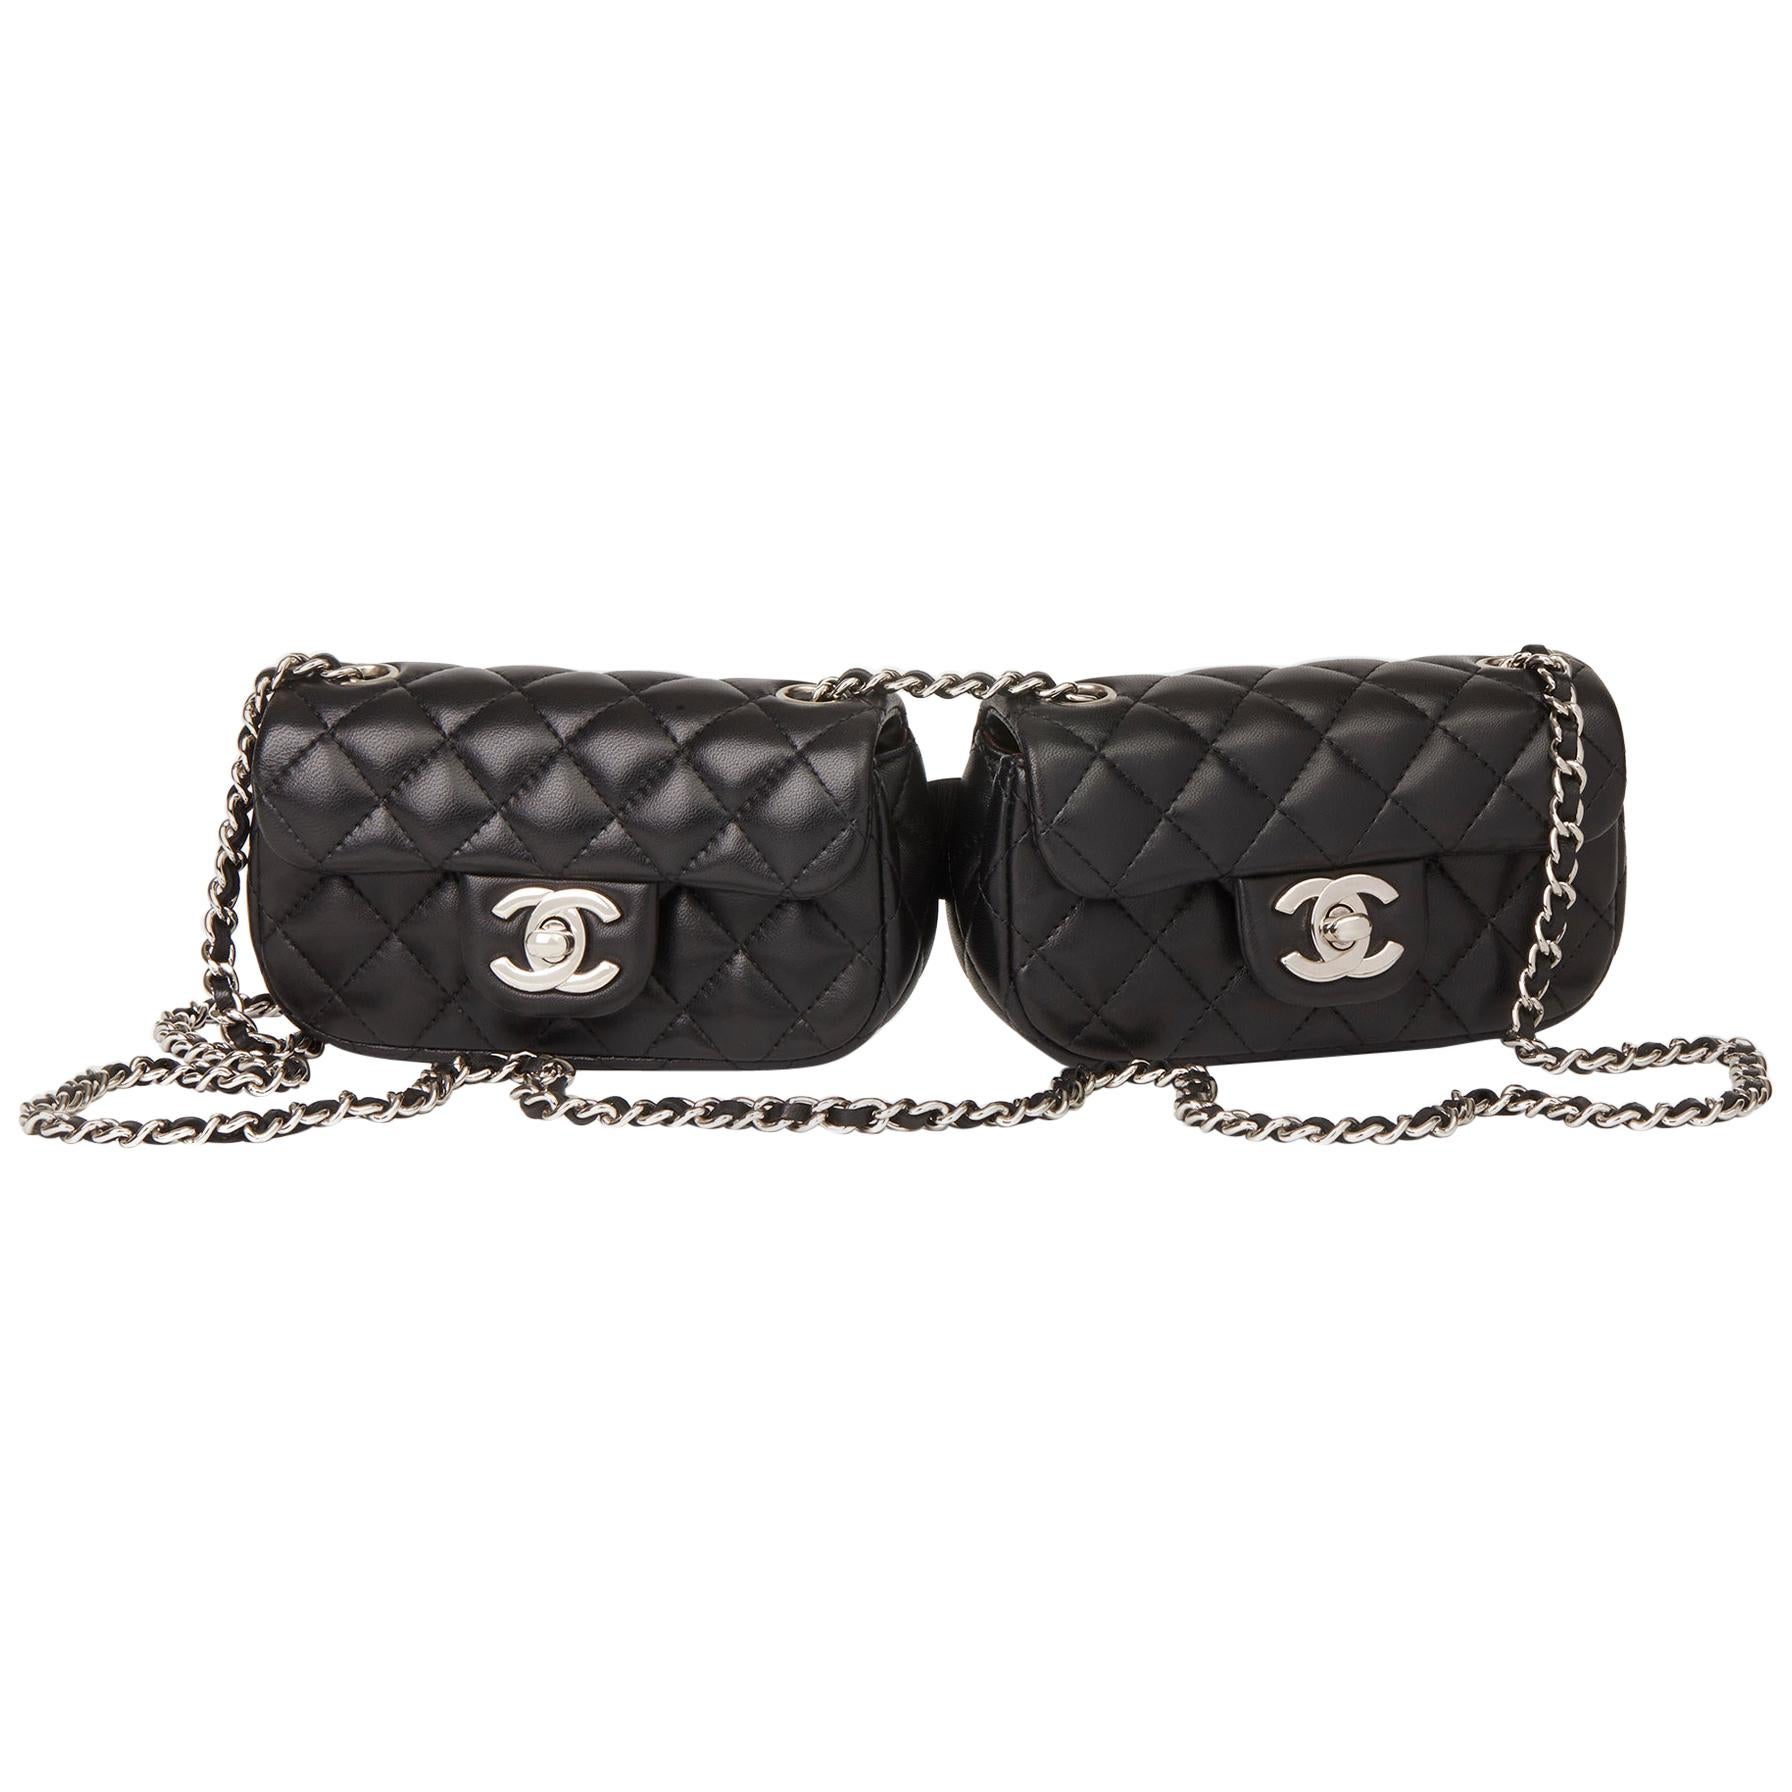 A Chanel Black Velvet Mademoiselle Flap Bag 1994-1996 Auction